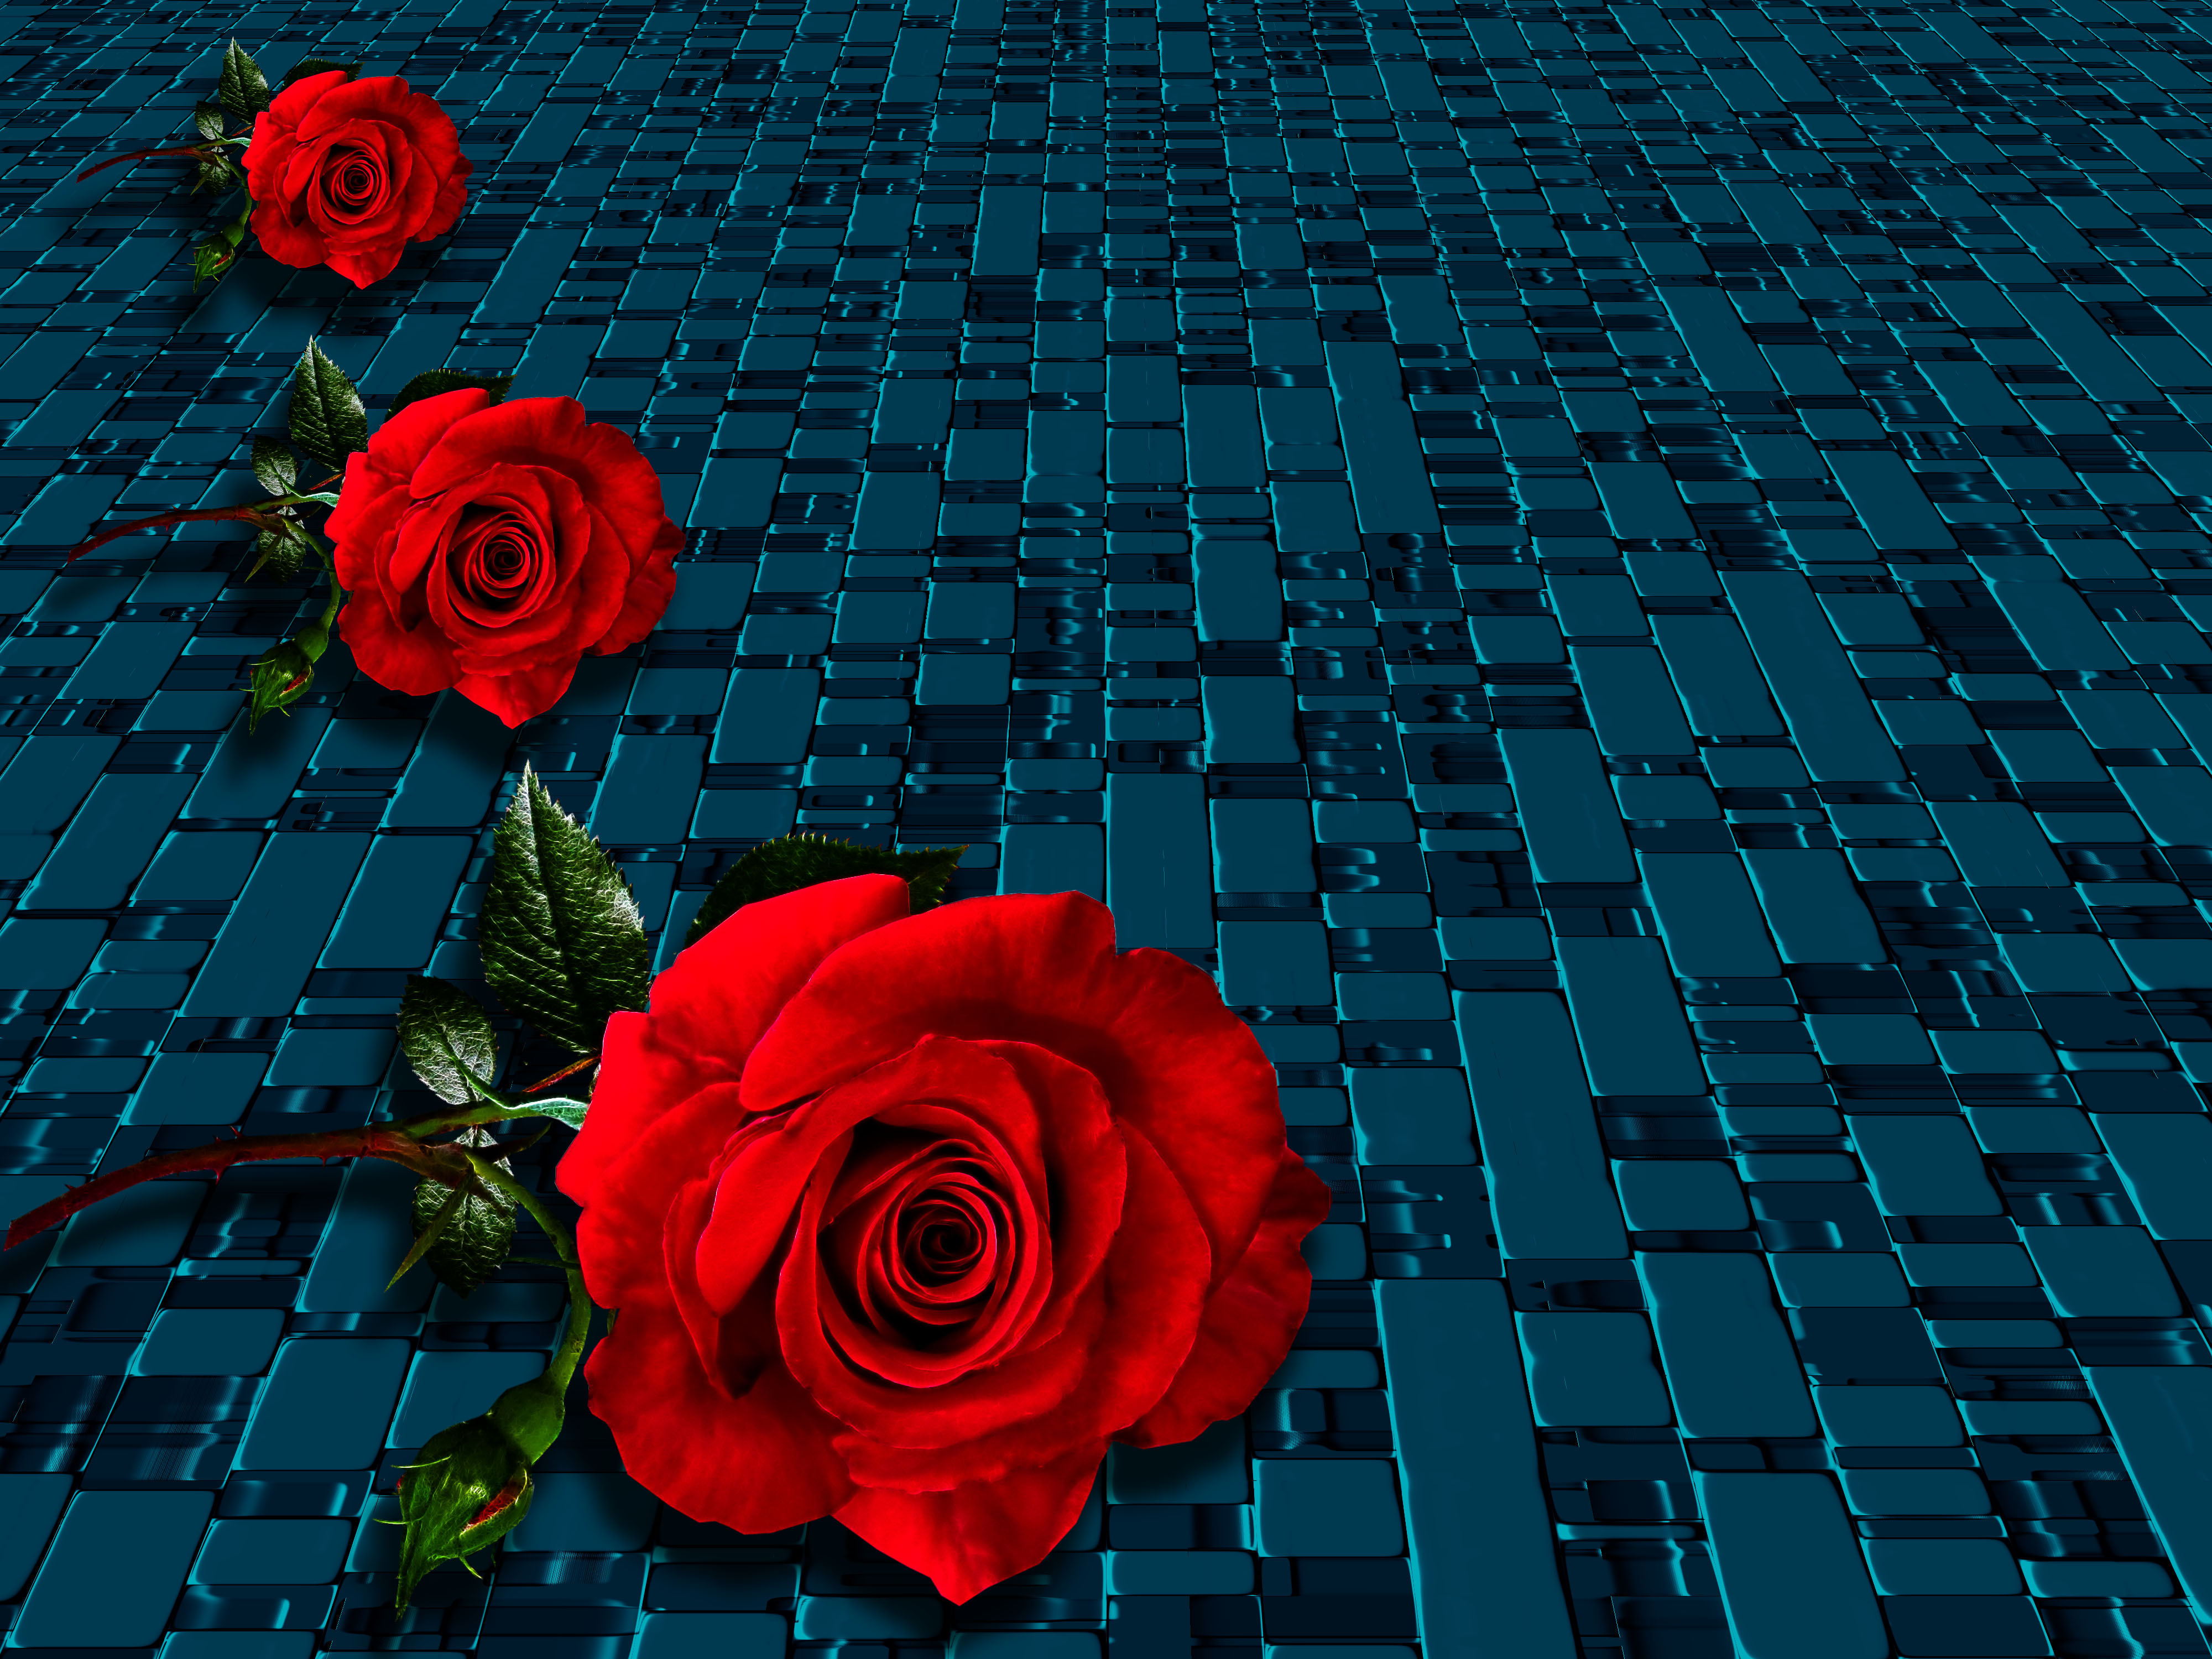 Red roses by Susanlu4esm